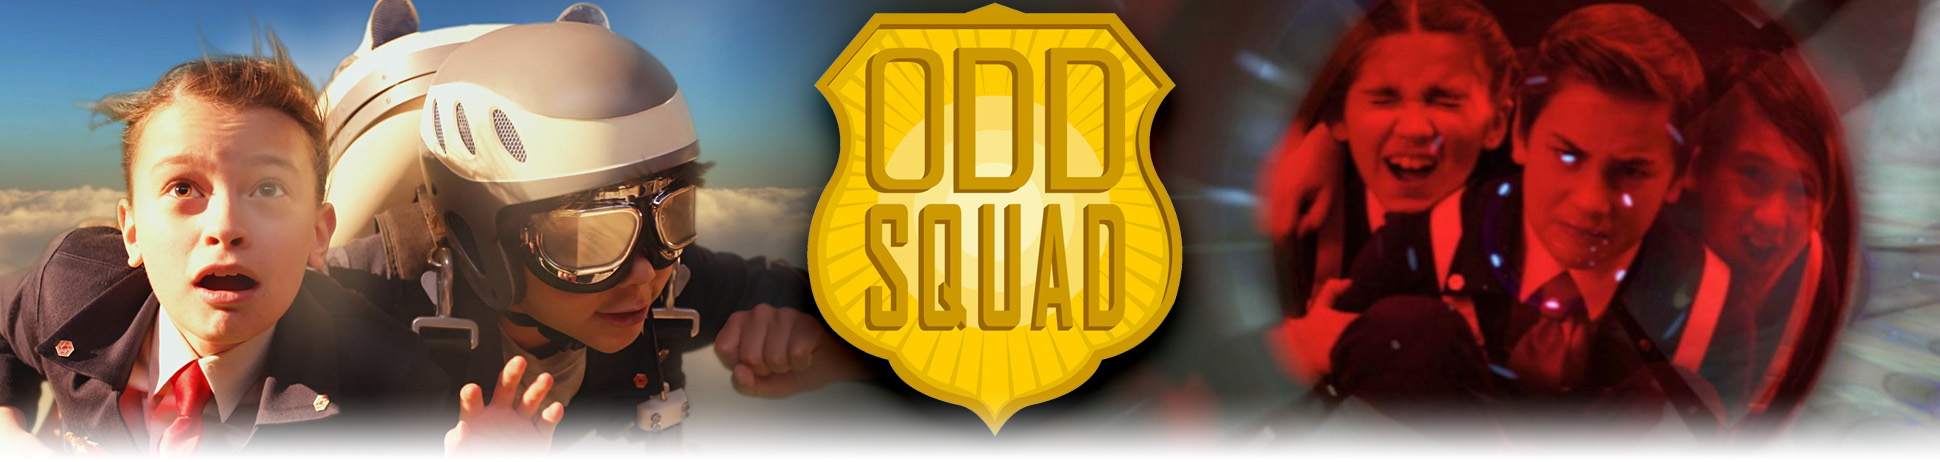 Odd Squad - Die Sondertruppe